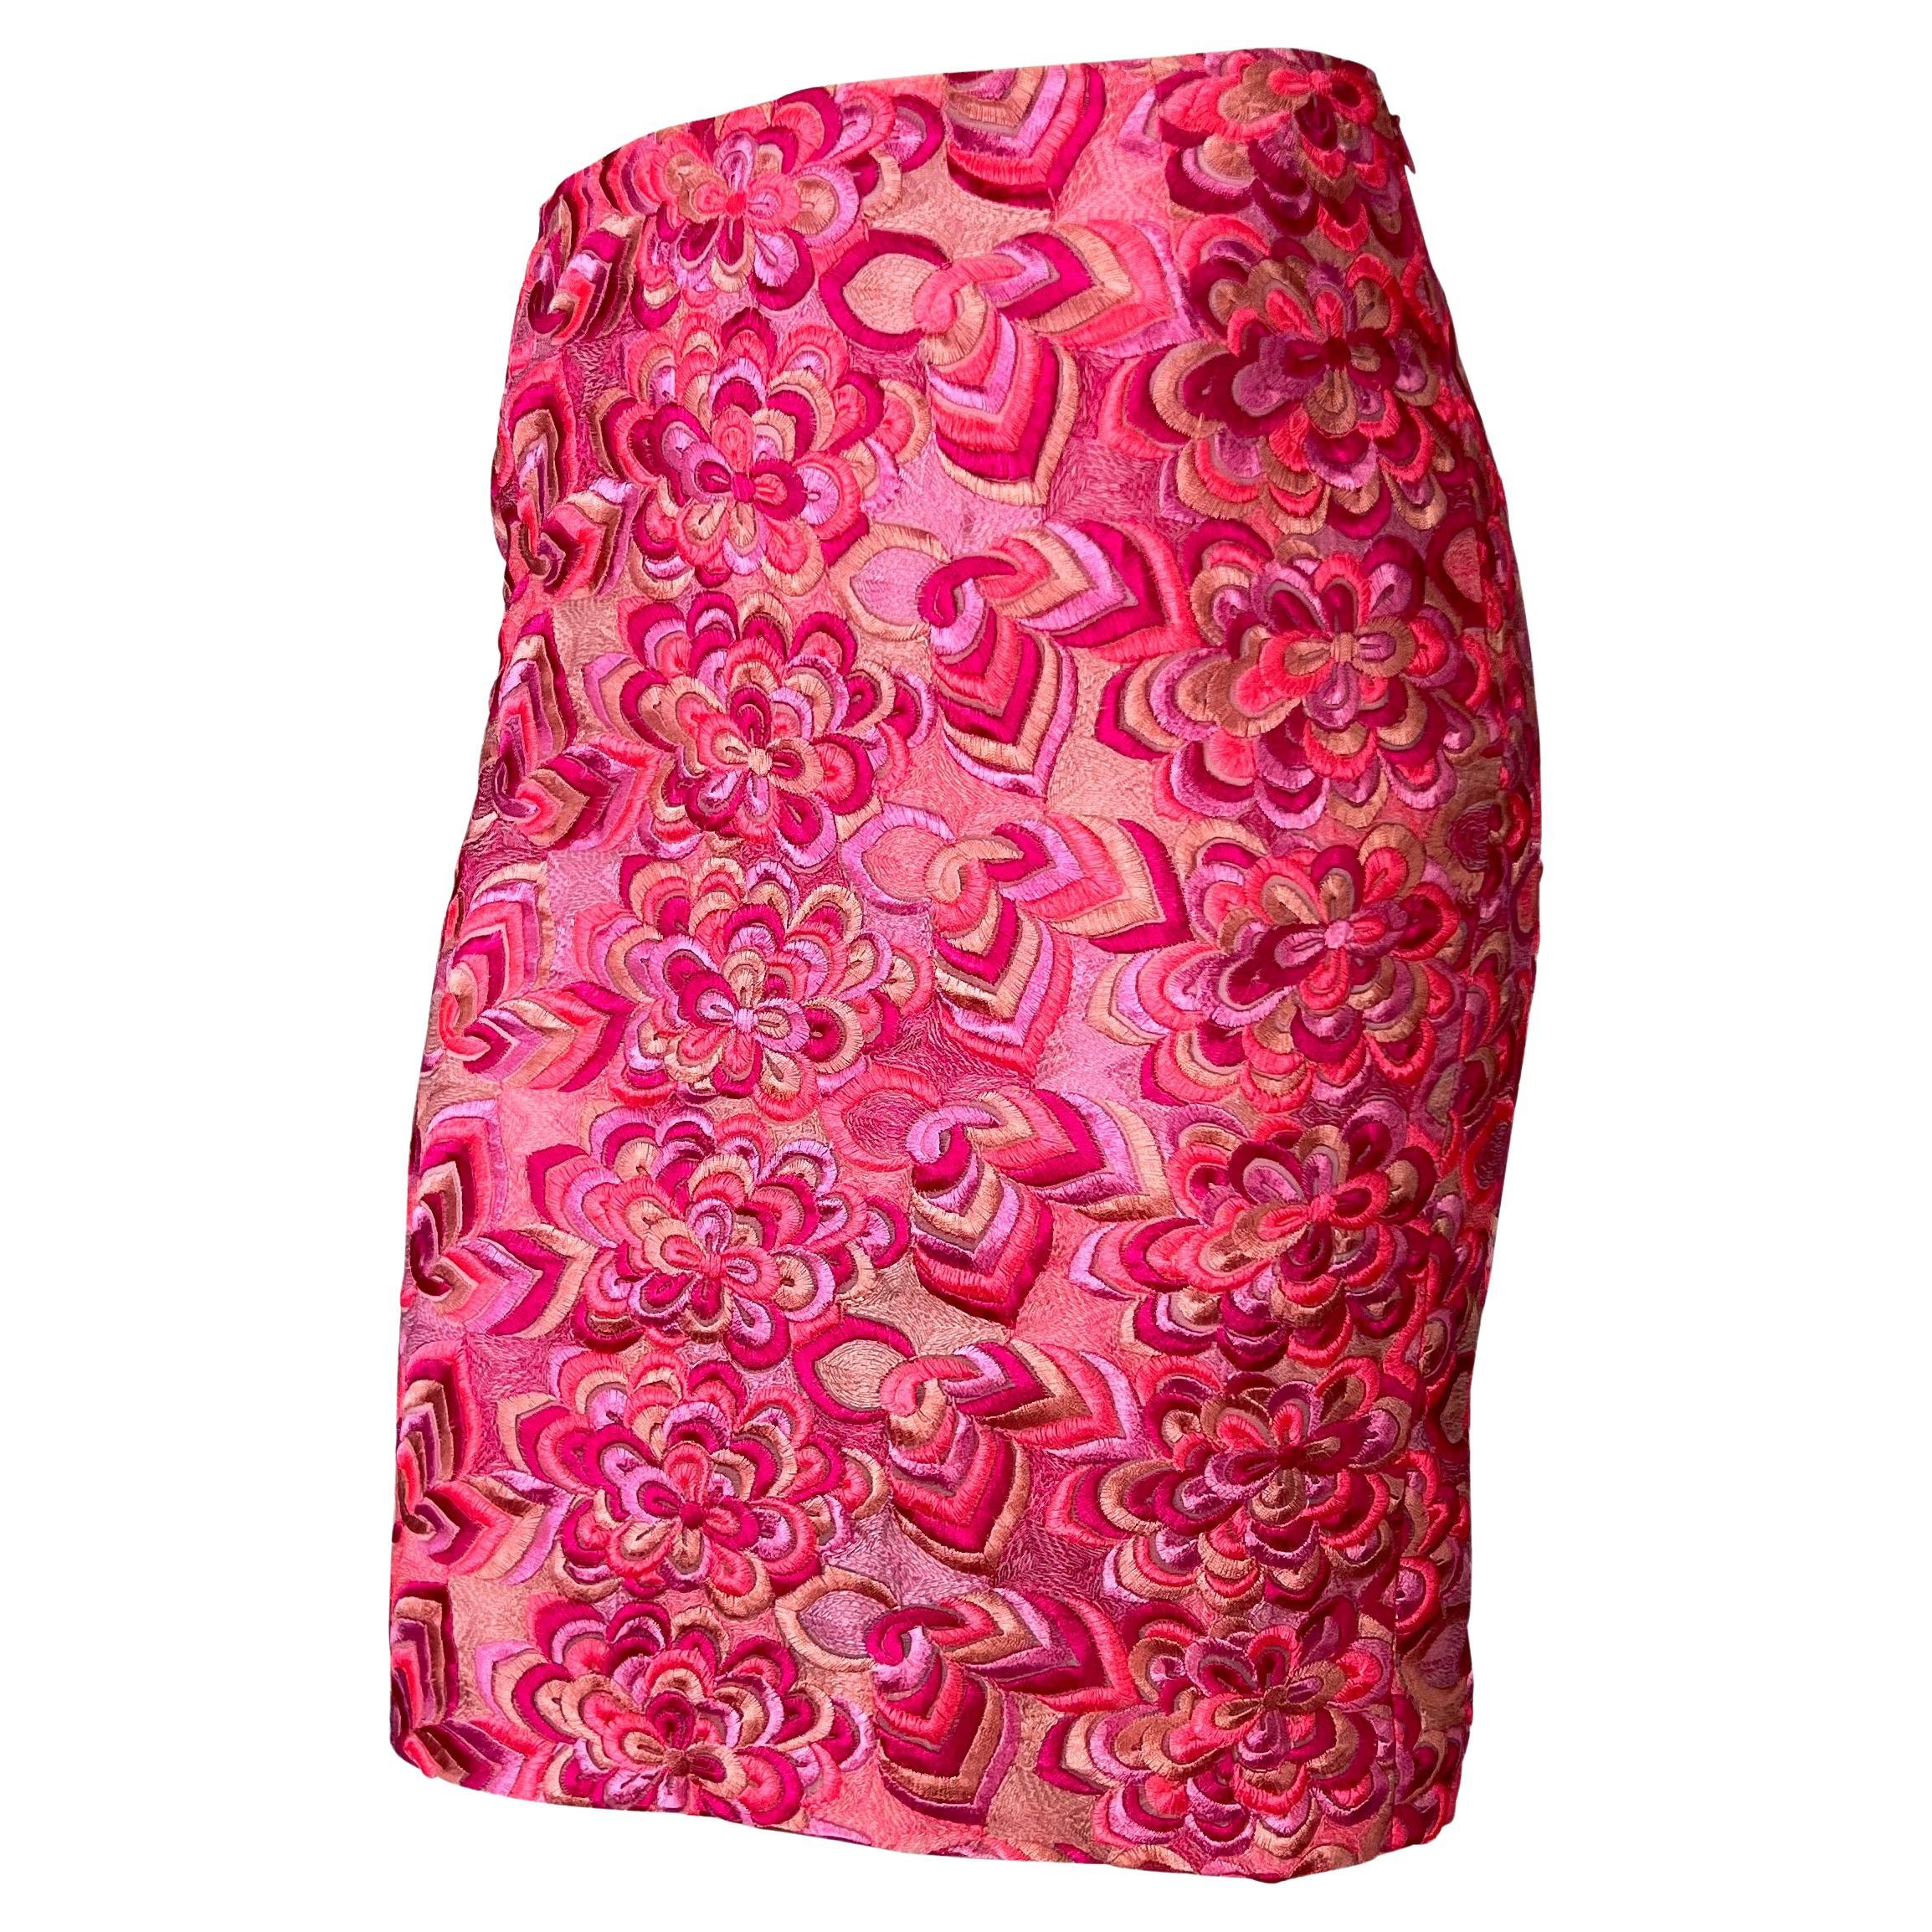 Collectional présente une jupe rose vif entièrement recouverte de broderies florales complexes, conçue par Donatella pour sa collection phare printemps/été 2000 pour la marque Gianni Versace. Rarement trouvée, cette beauté de l'an 2000 est